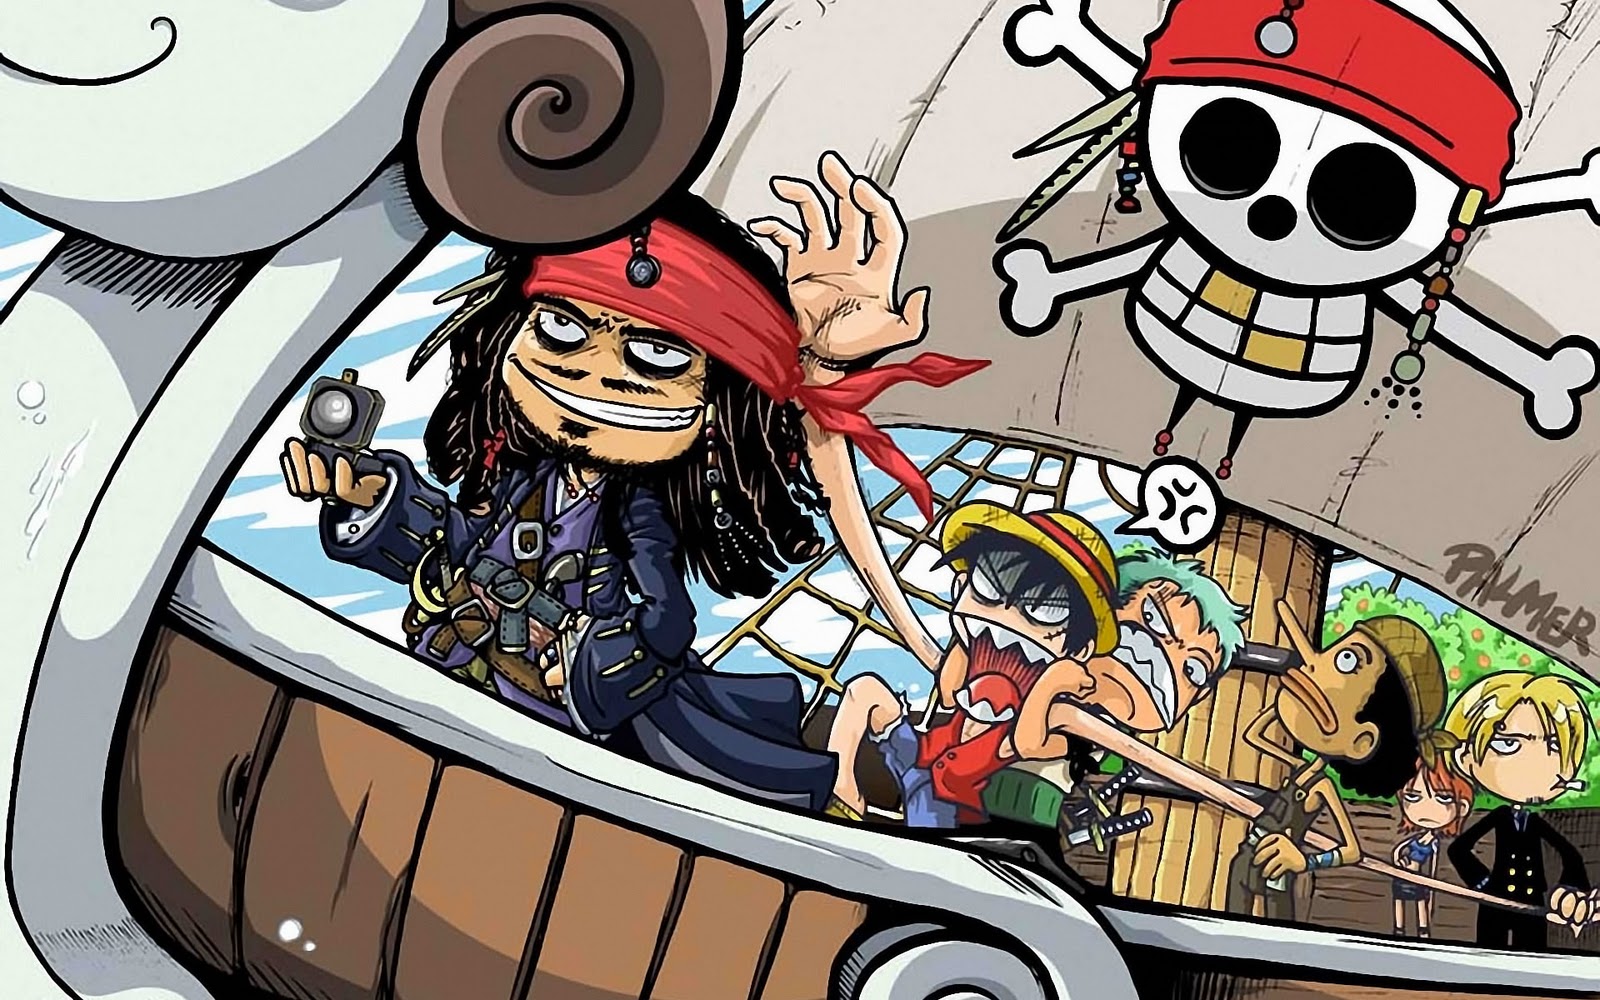 Que opinan sobre Void Elsword? - Página 2 Piratas+del+caribe+4+anime+poster